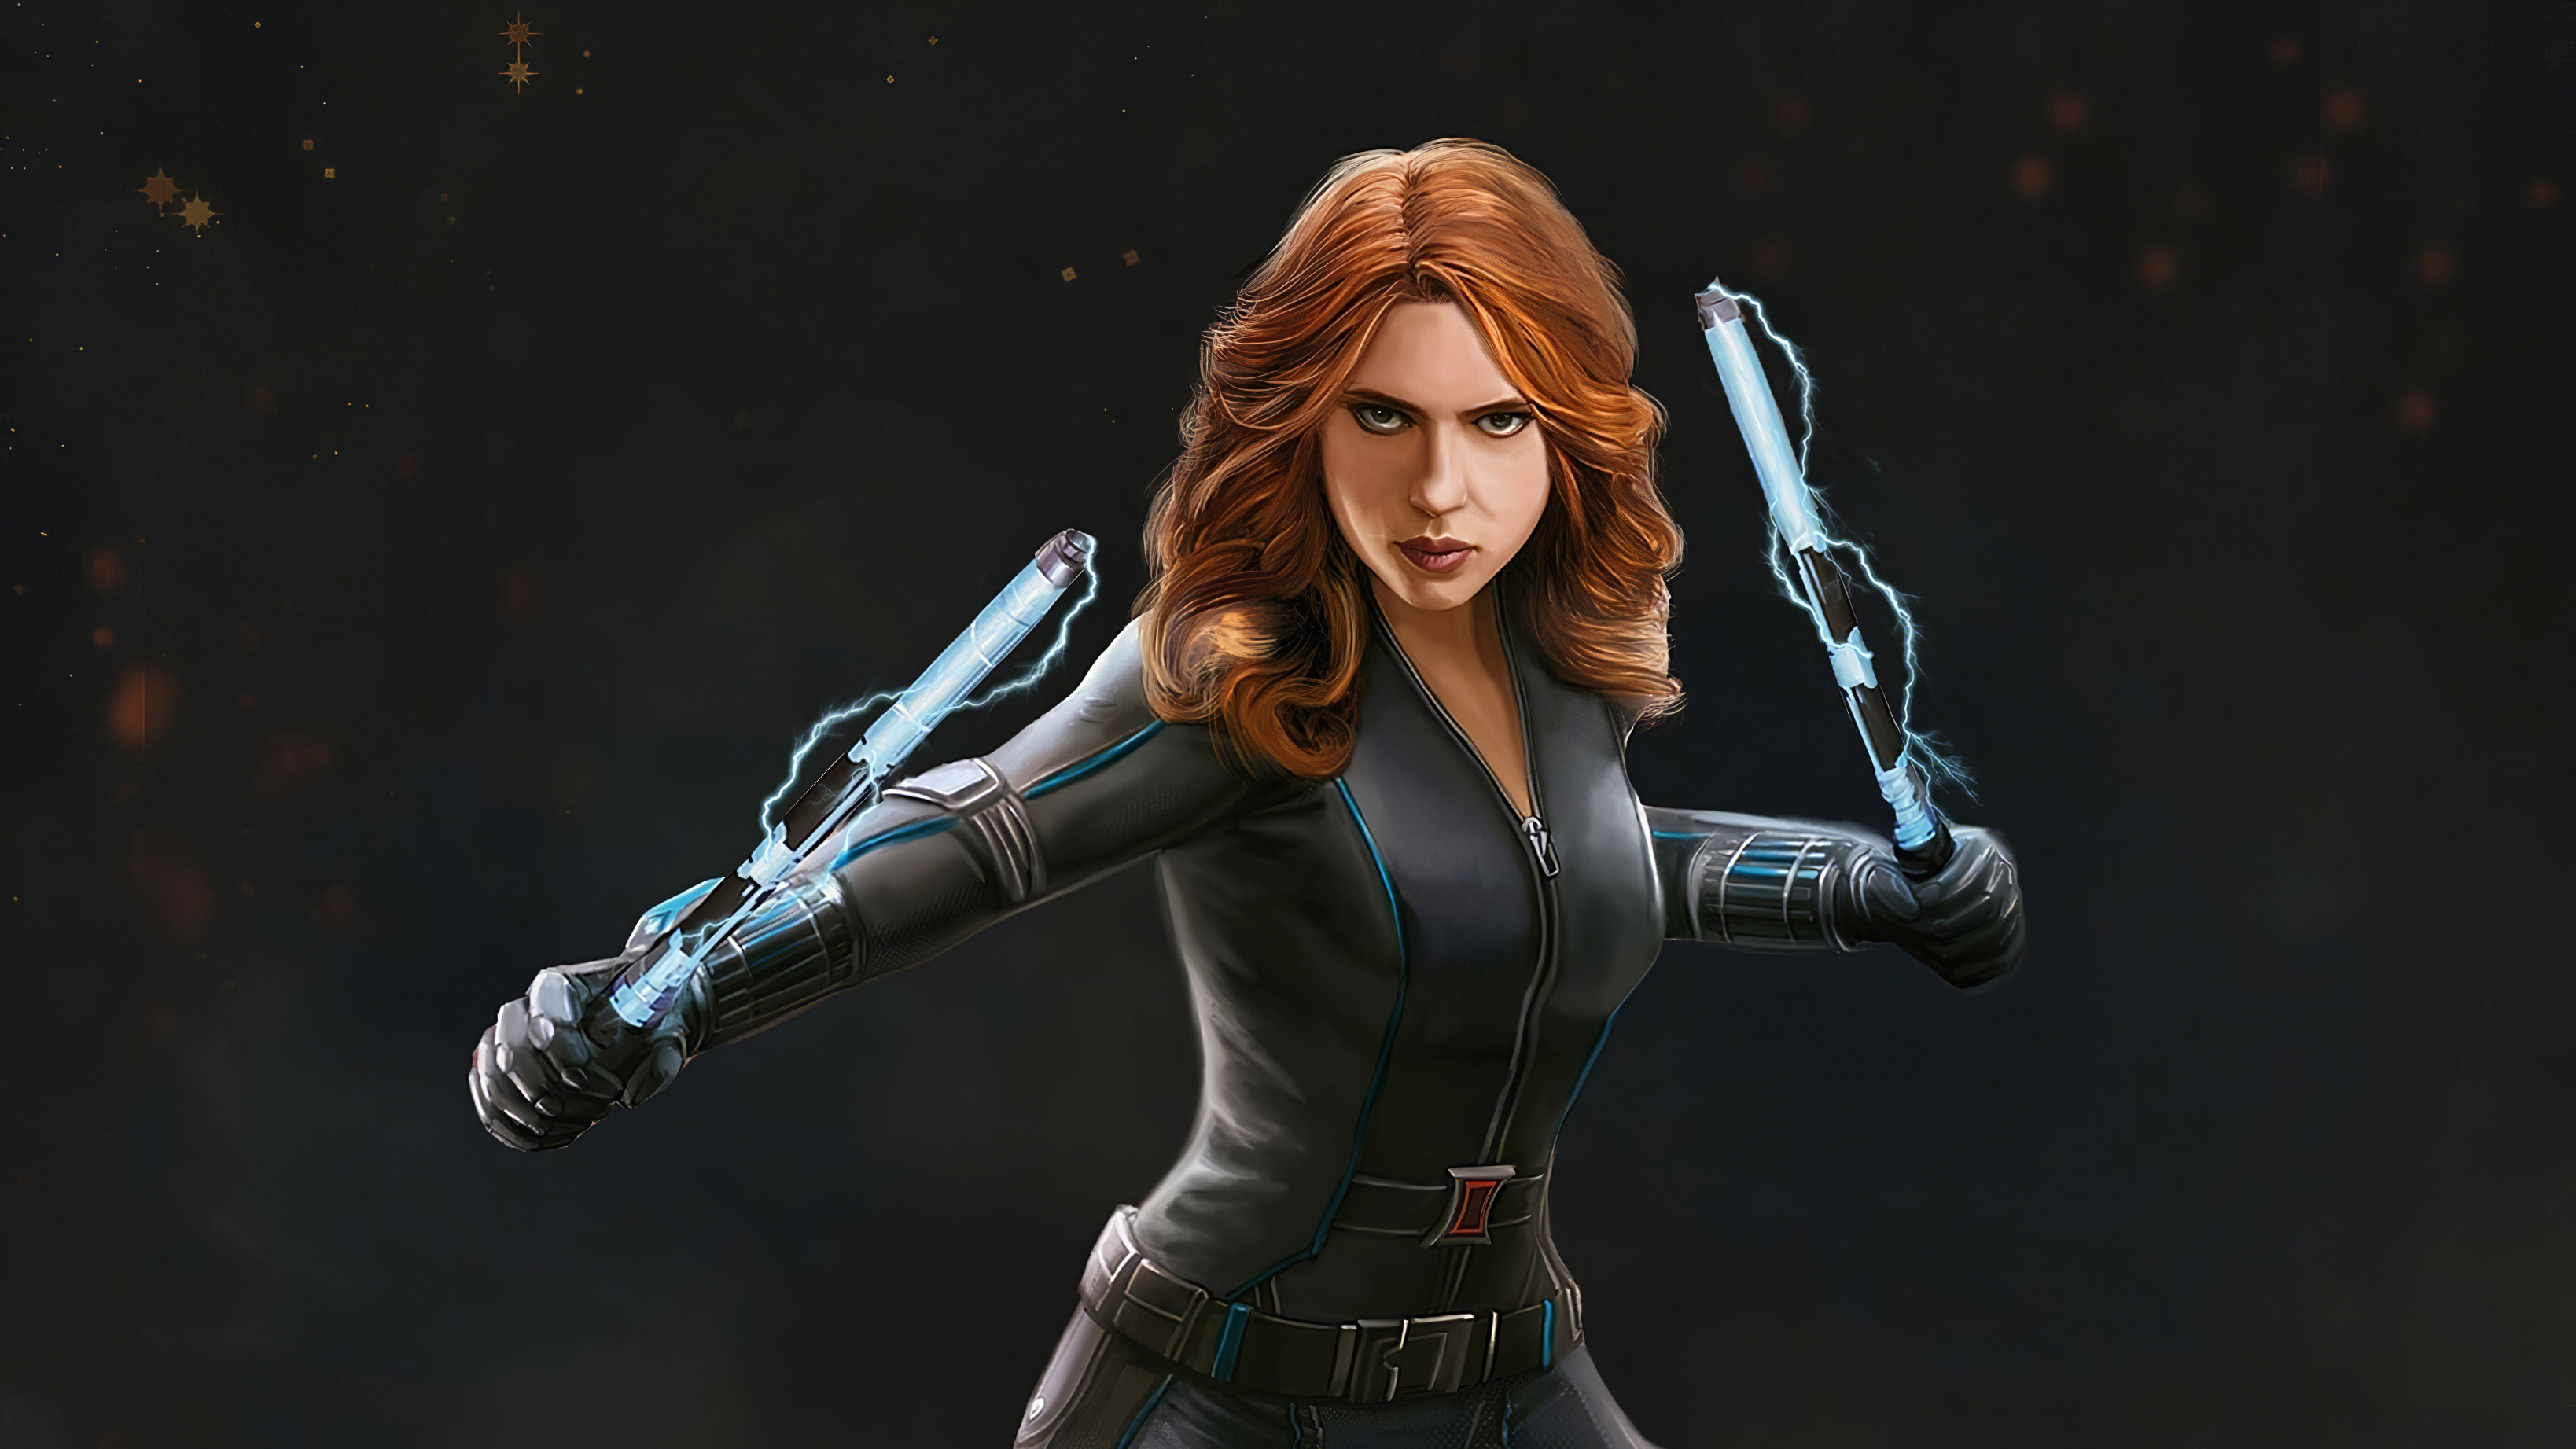 Black Widow 4k Artwork New, HD Superheroes, 4k Wallpapers, Images